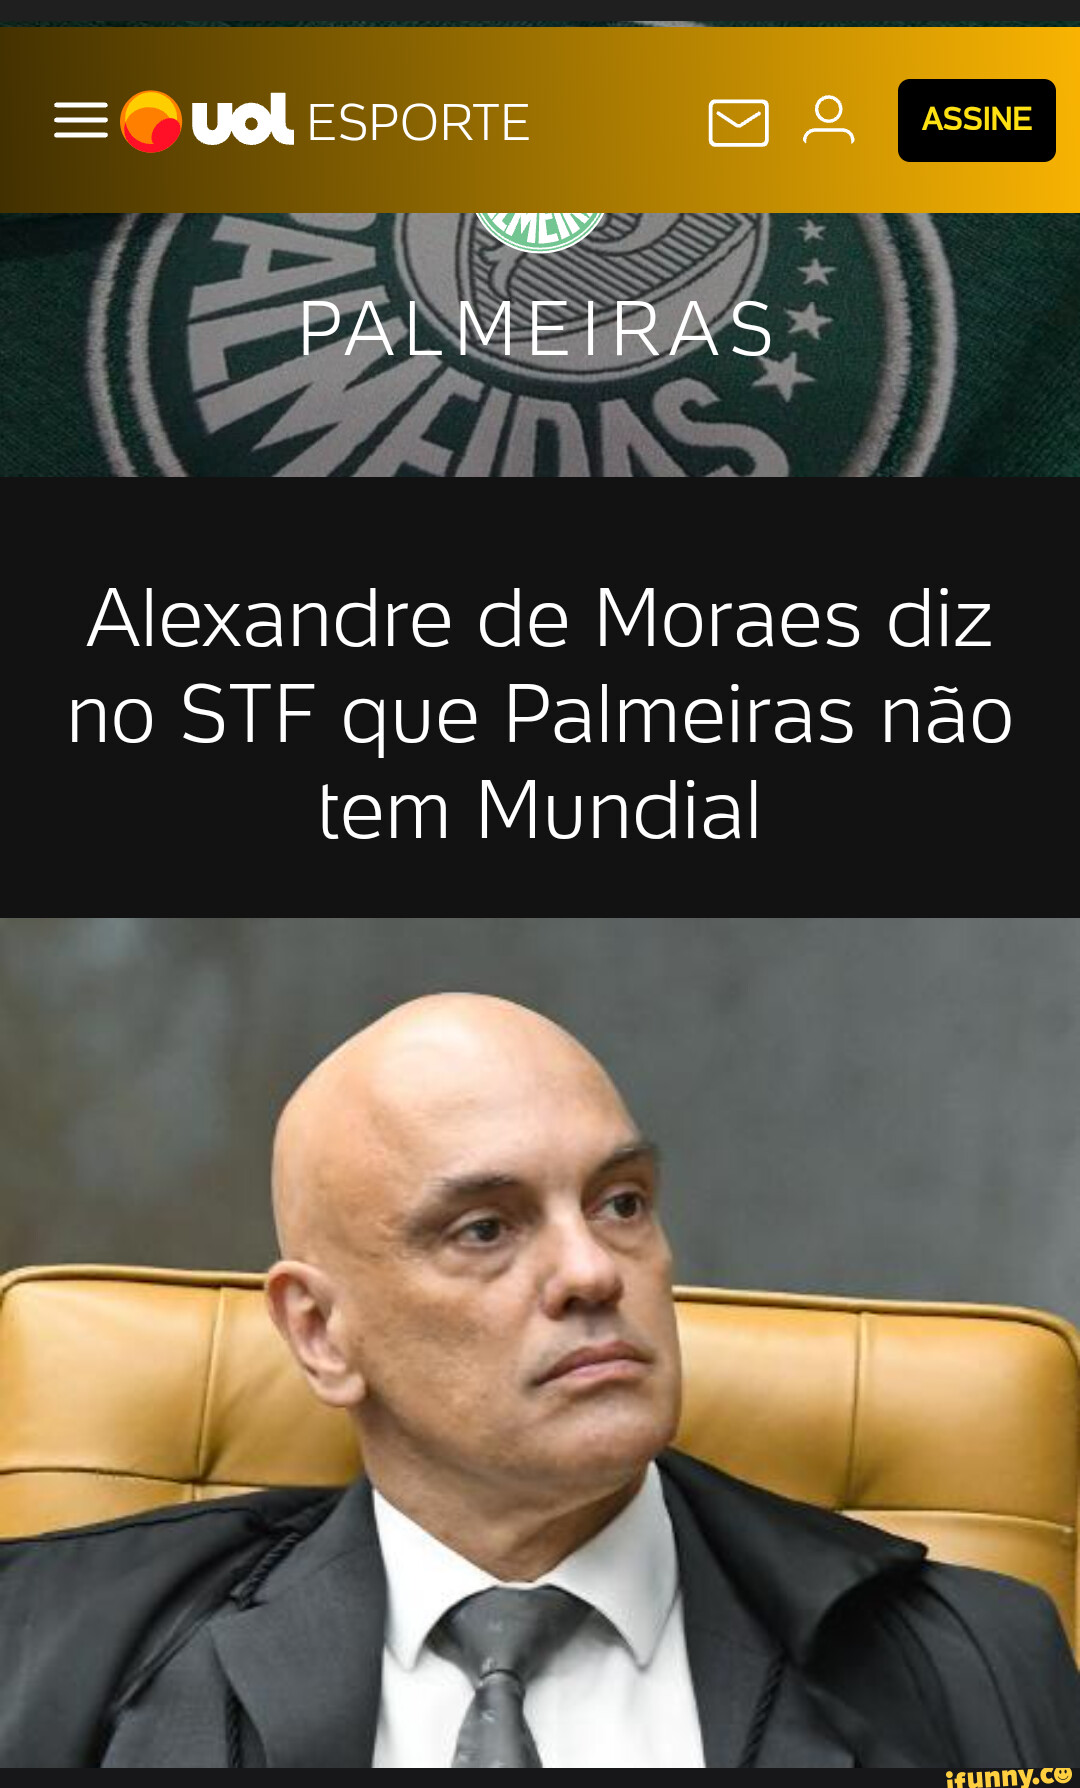 Palmeiras não tem mundial - iFunny Brazil